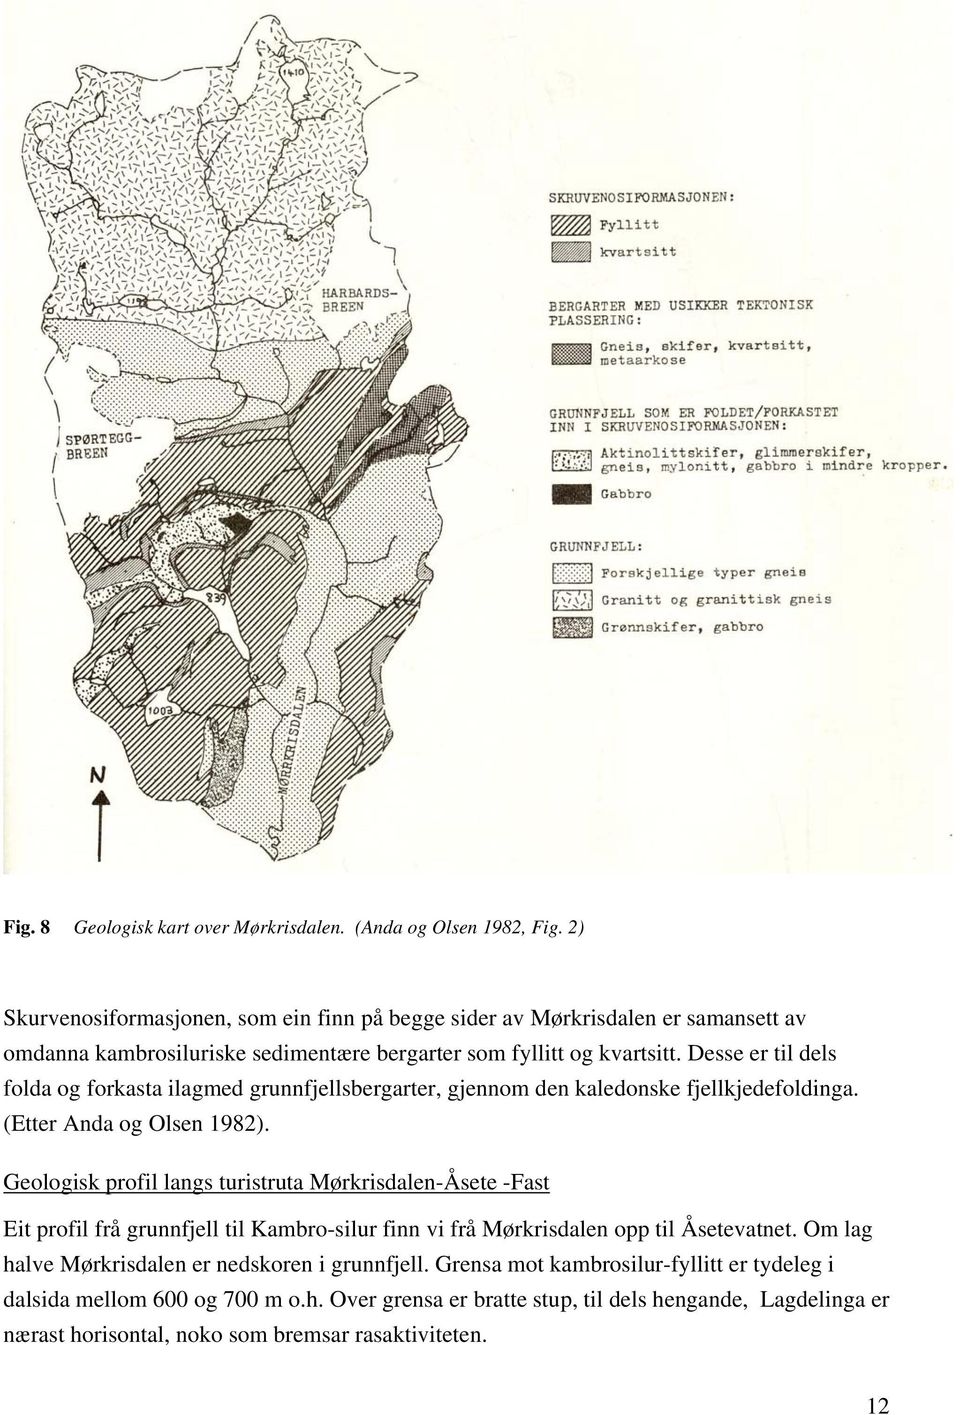 Desse er til dels folda og forkasta ilagmed grunnfjellsbergarter, gjennom den kaledonske fjellkjedefoldinga. (Etter Anda og Olsen 1982).